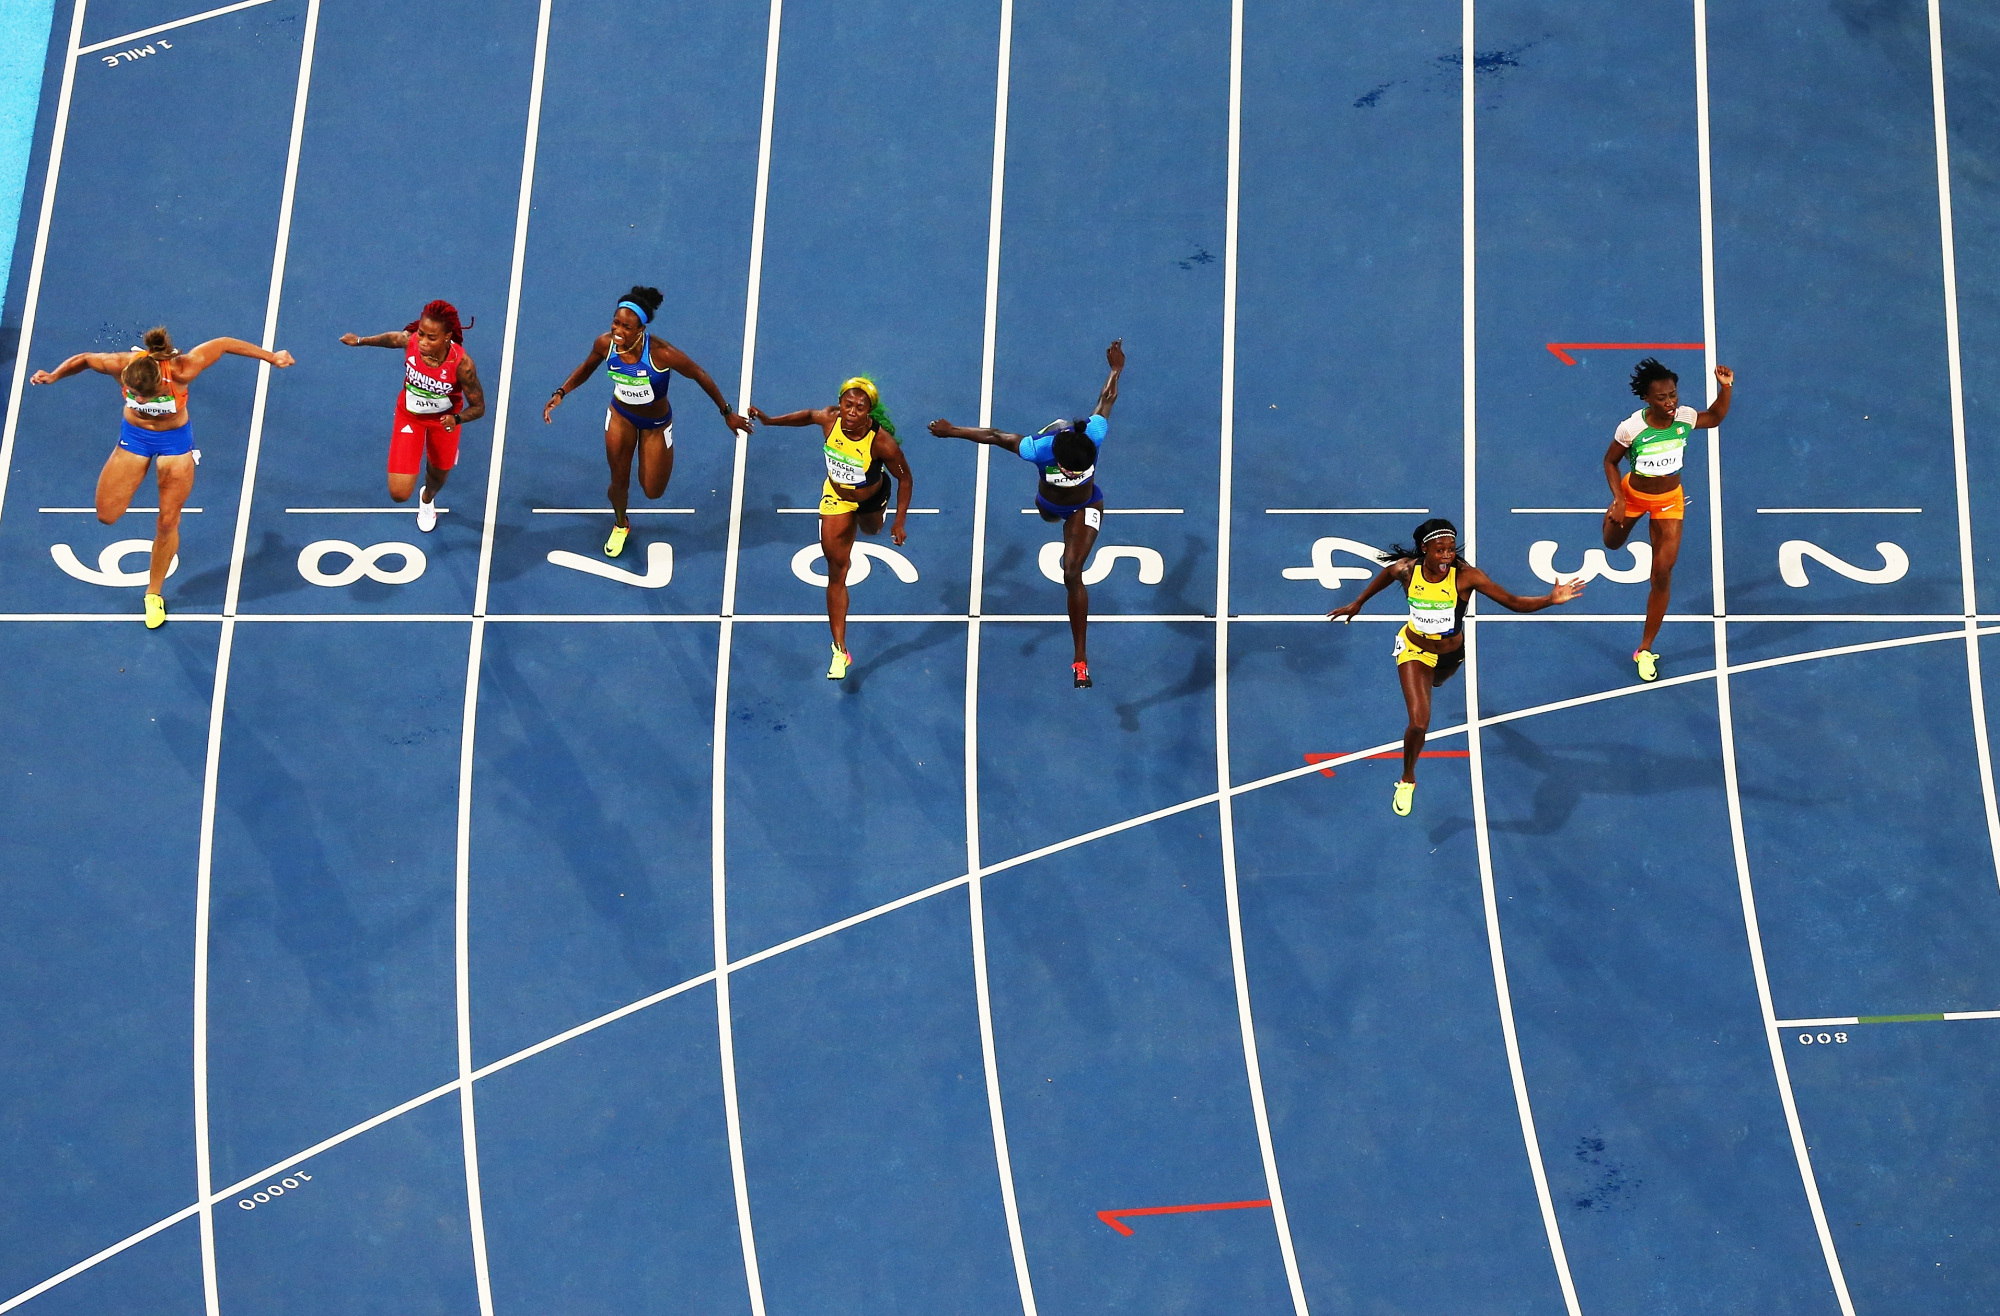 Des athlètes franchissent la ligne d'arrivée d'une course d'athlétisme.